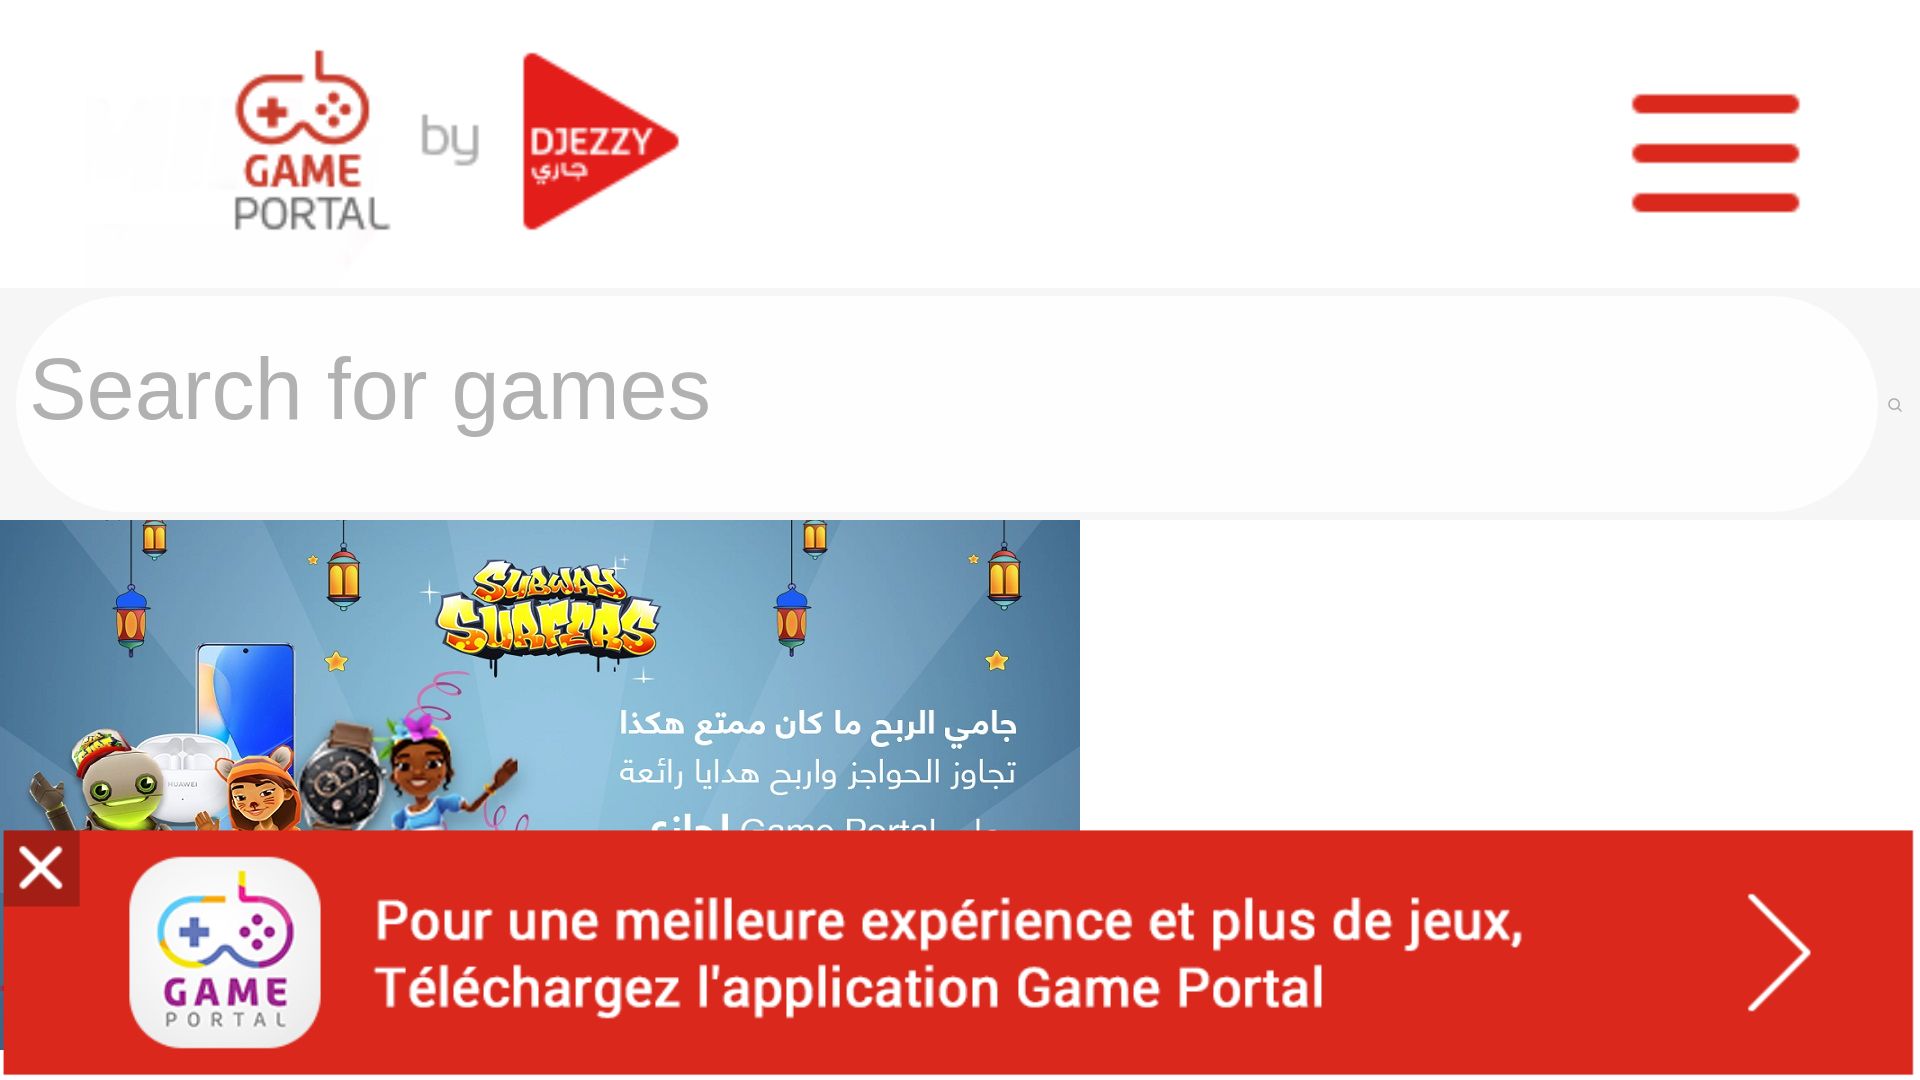 Status do site gameportal.djezzy.dz está   ONLINE